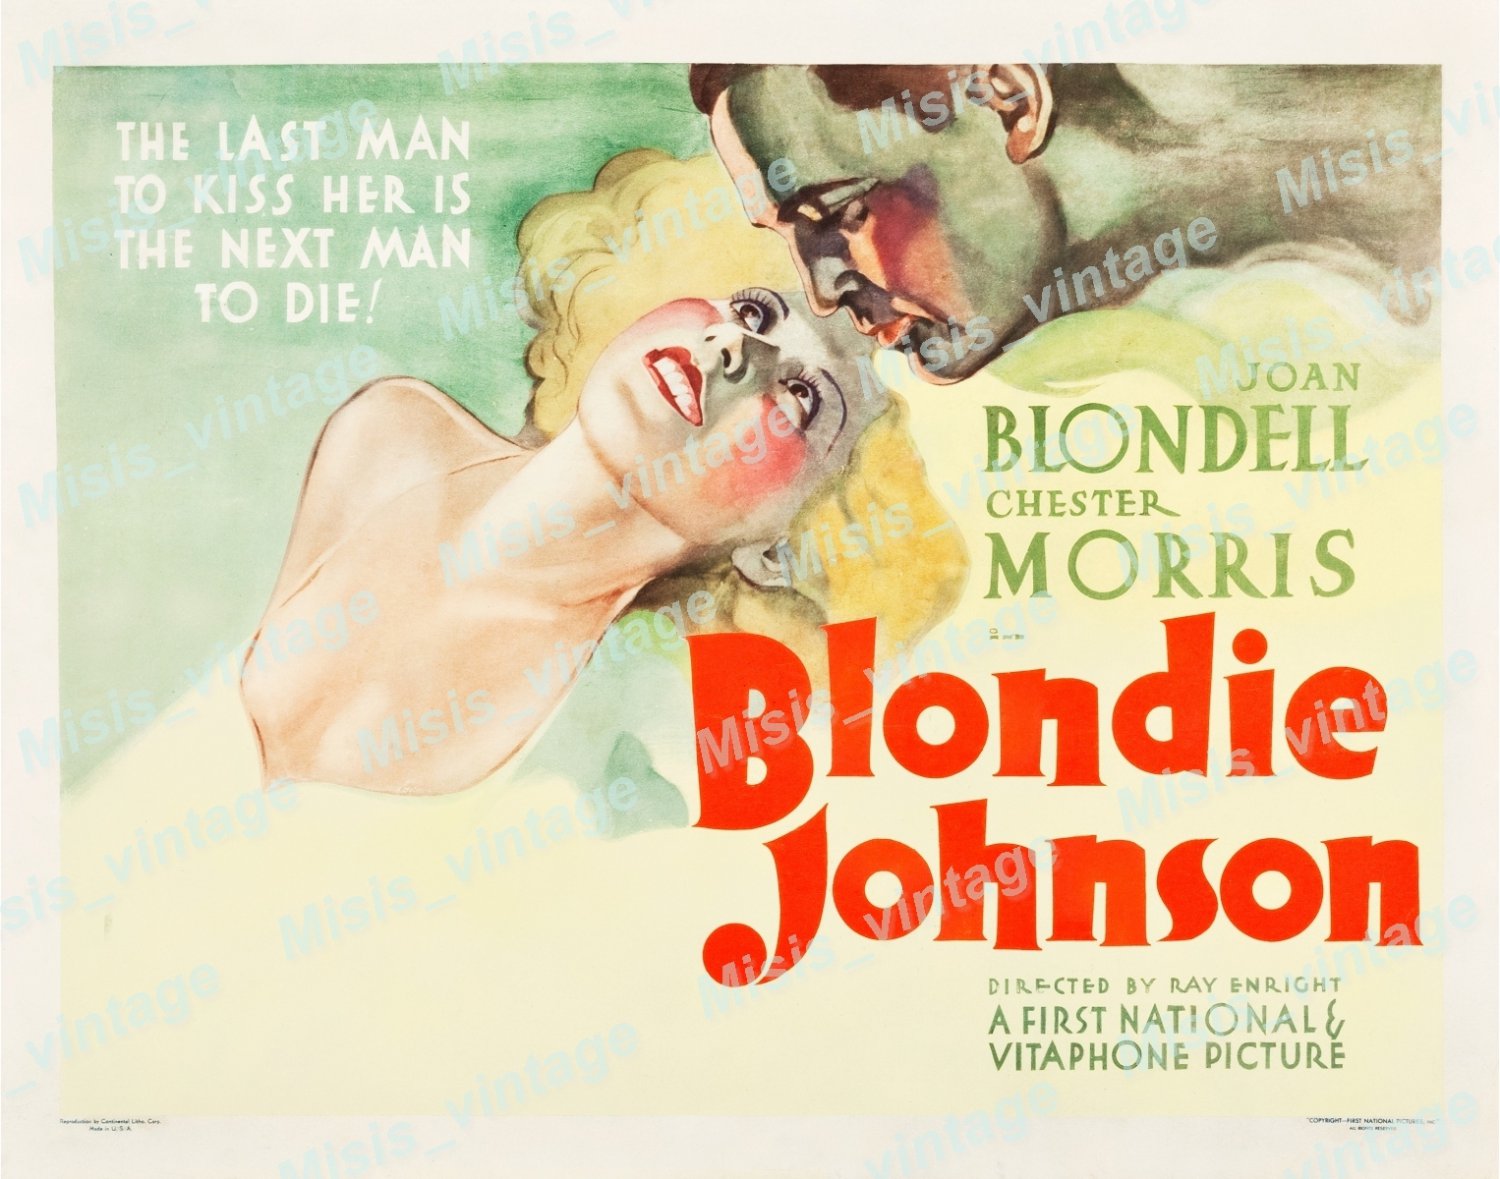 Blondie johnson